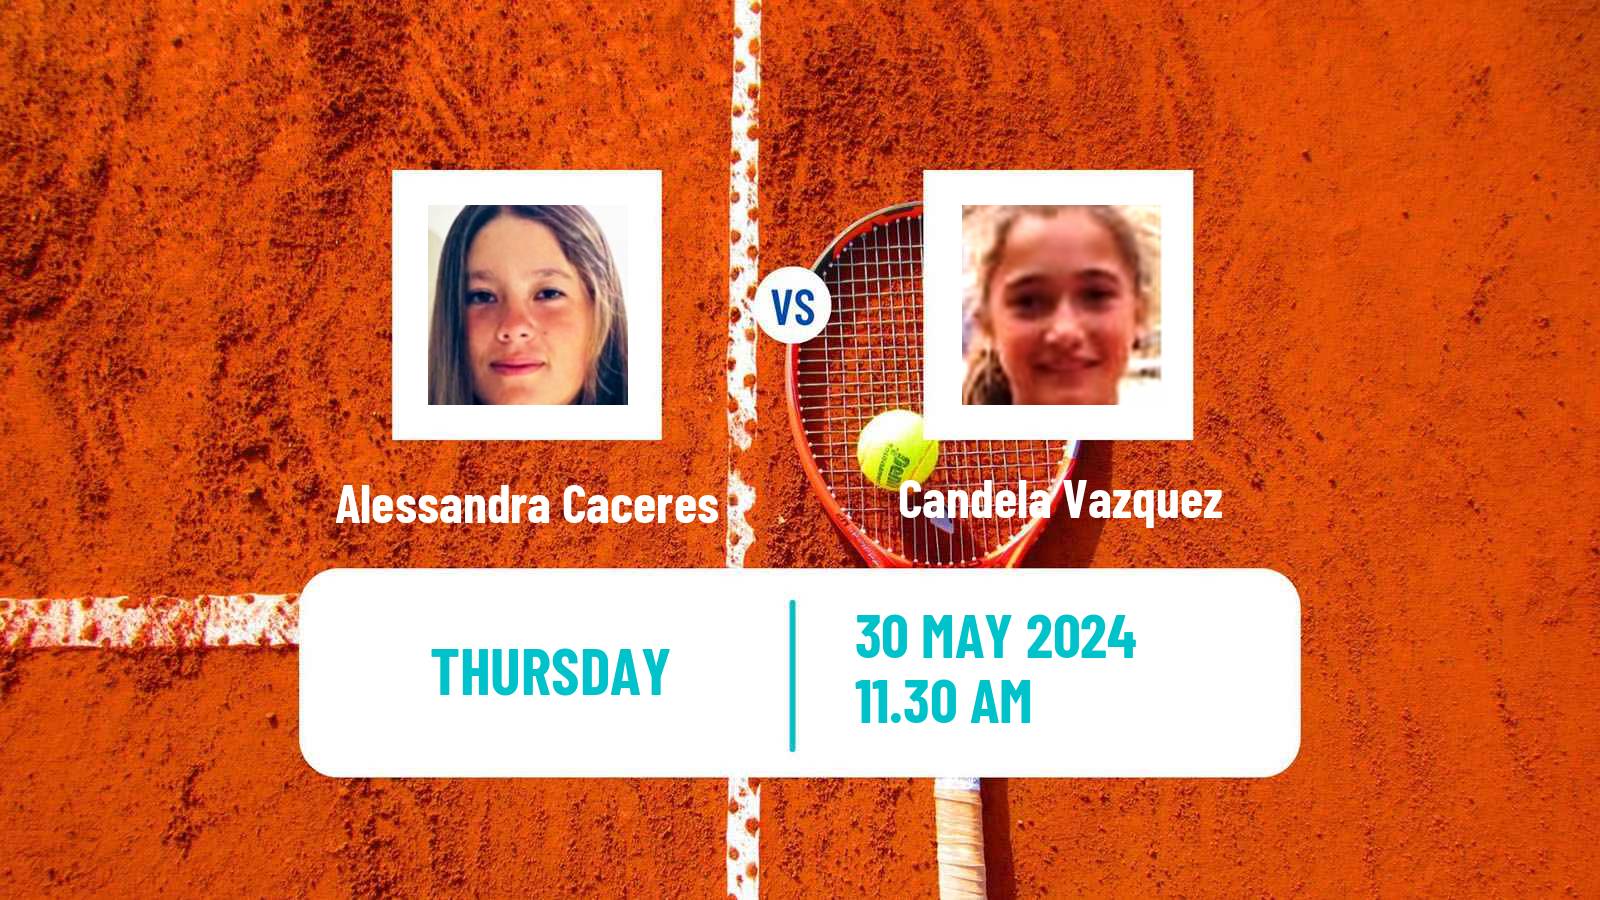 Tennis ITF W15 Rio Claro Women Alessandra Caceres - Candela Vazquez